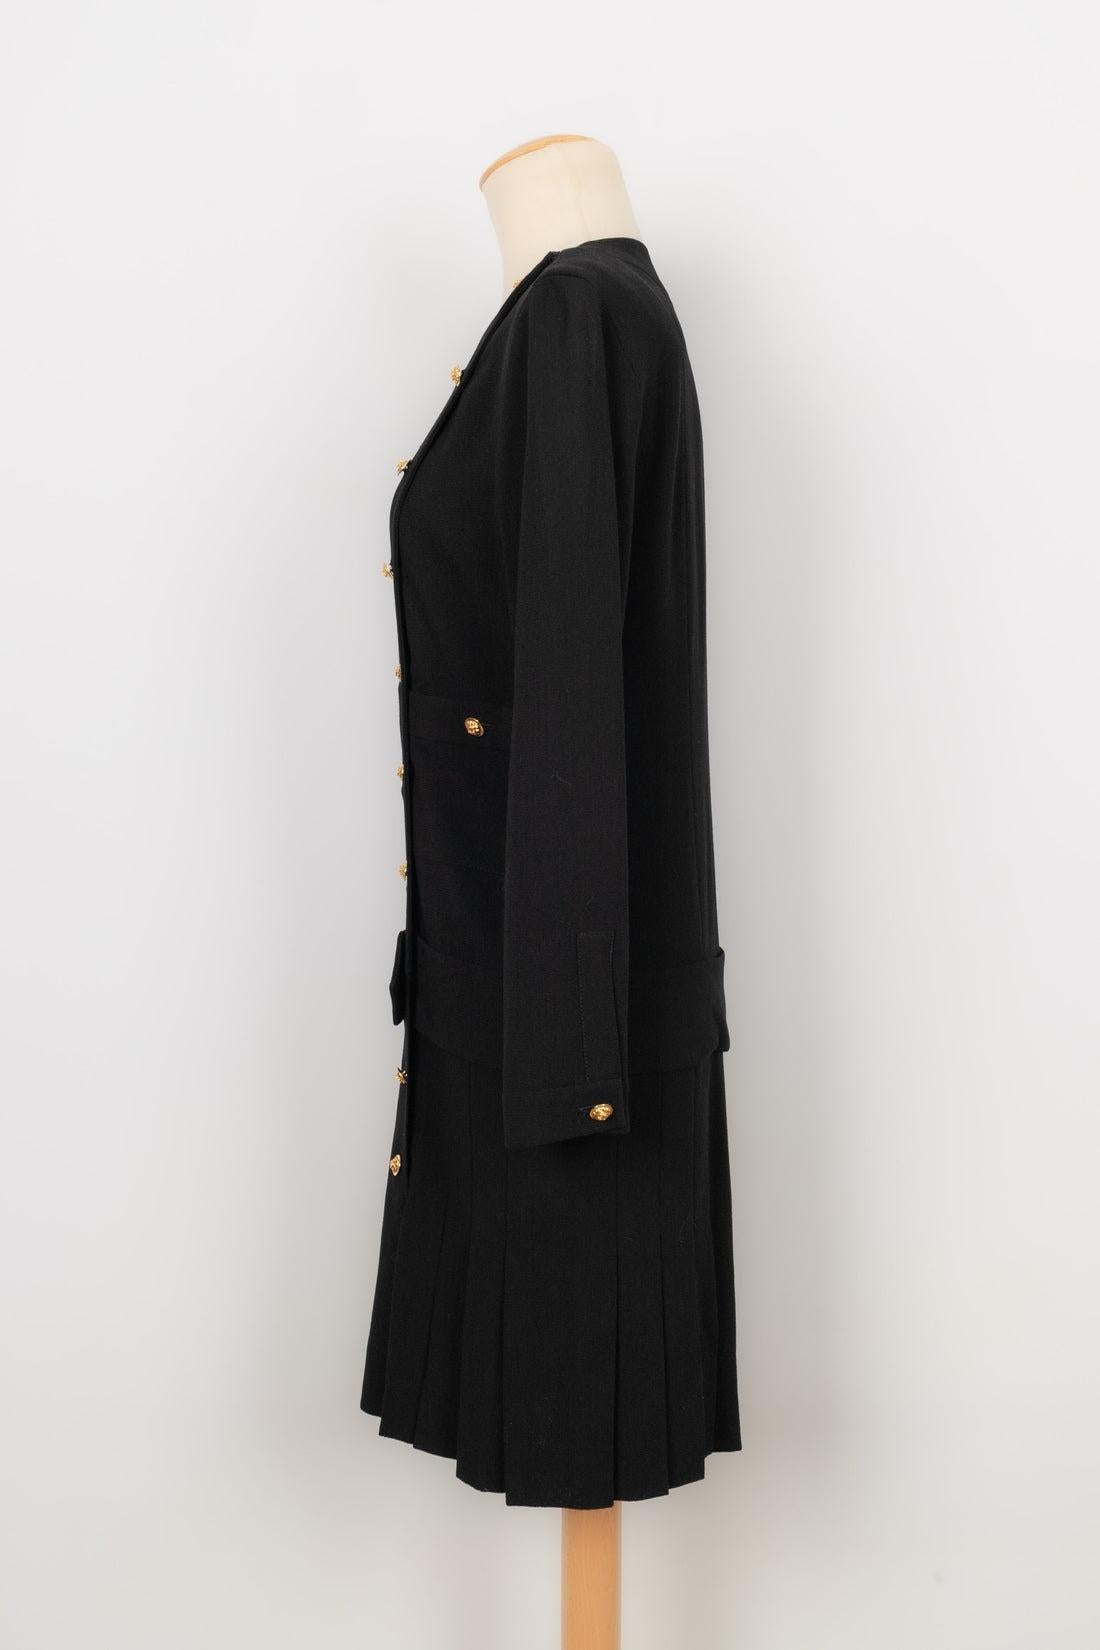 Chanel - Robe noire à manches longues ornée de boutons en métal doré. Aucune taille n'est indiquée, il convient à un 38FR. Pièce datant de la fin des années 1980.

Informations complémentaires :
Condit : Très bon état.
Dimensions : Largeur des